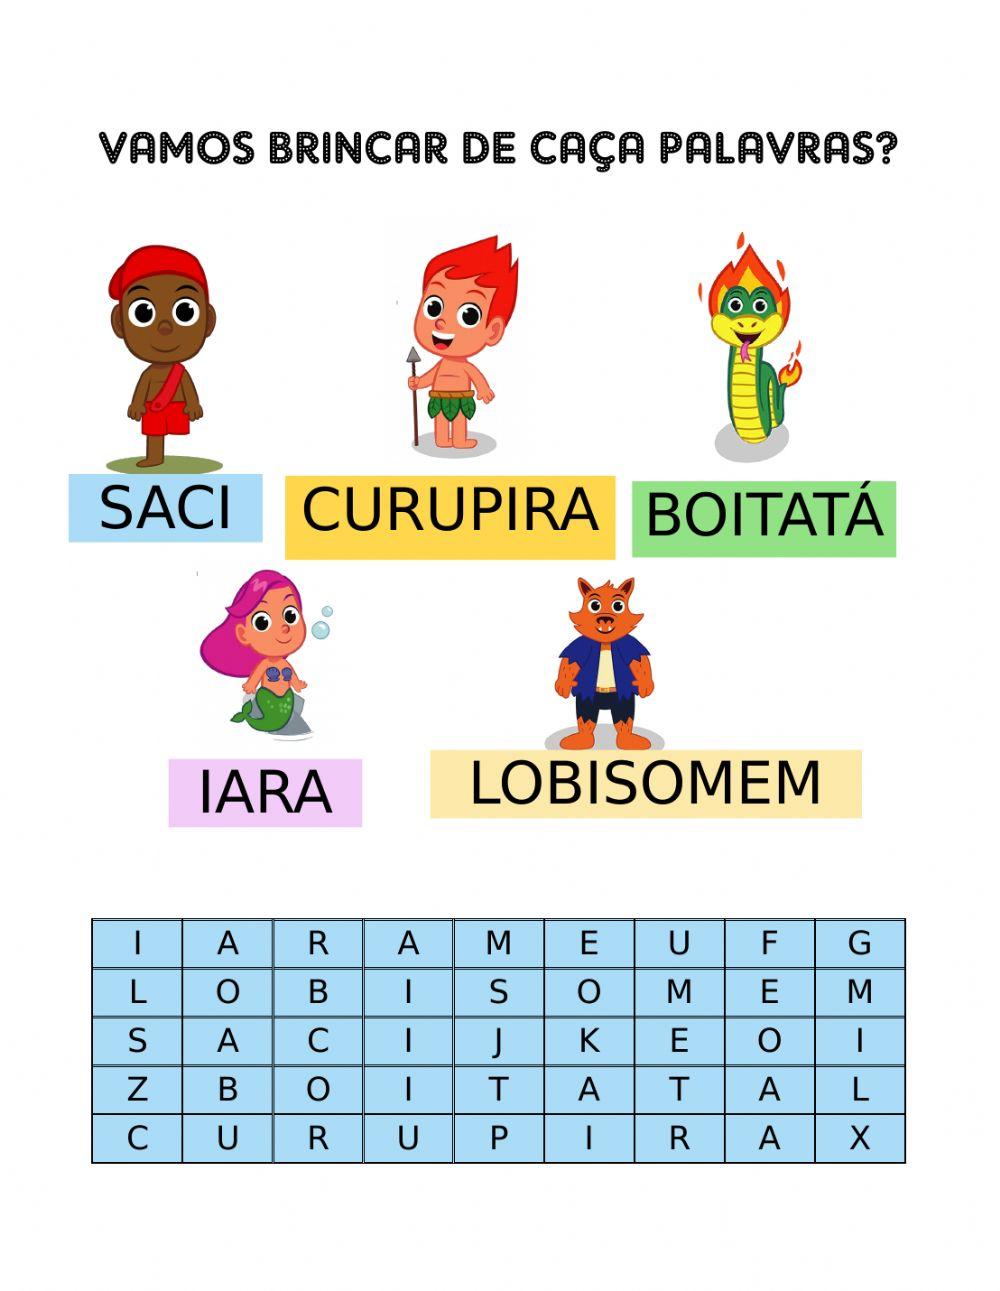 Personagens do Folclore Brasileiro - Caça Palavras - Atividade